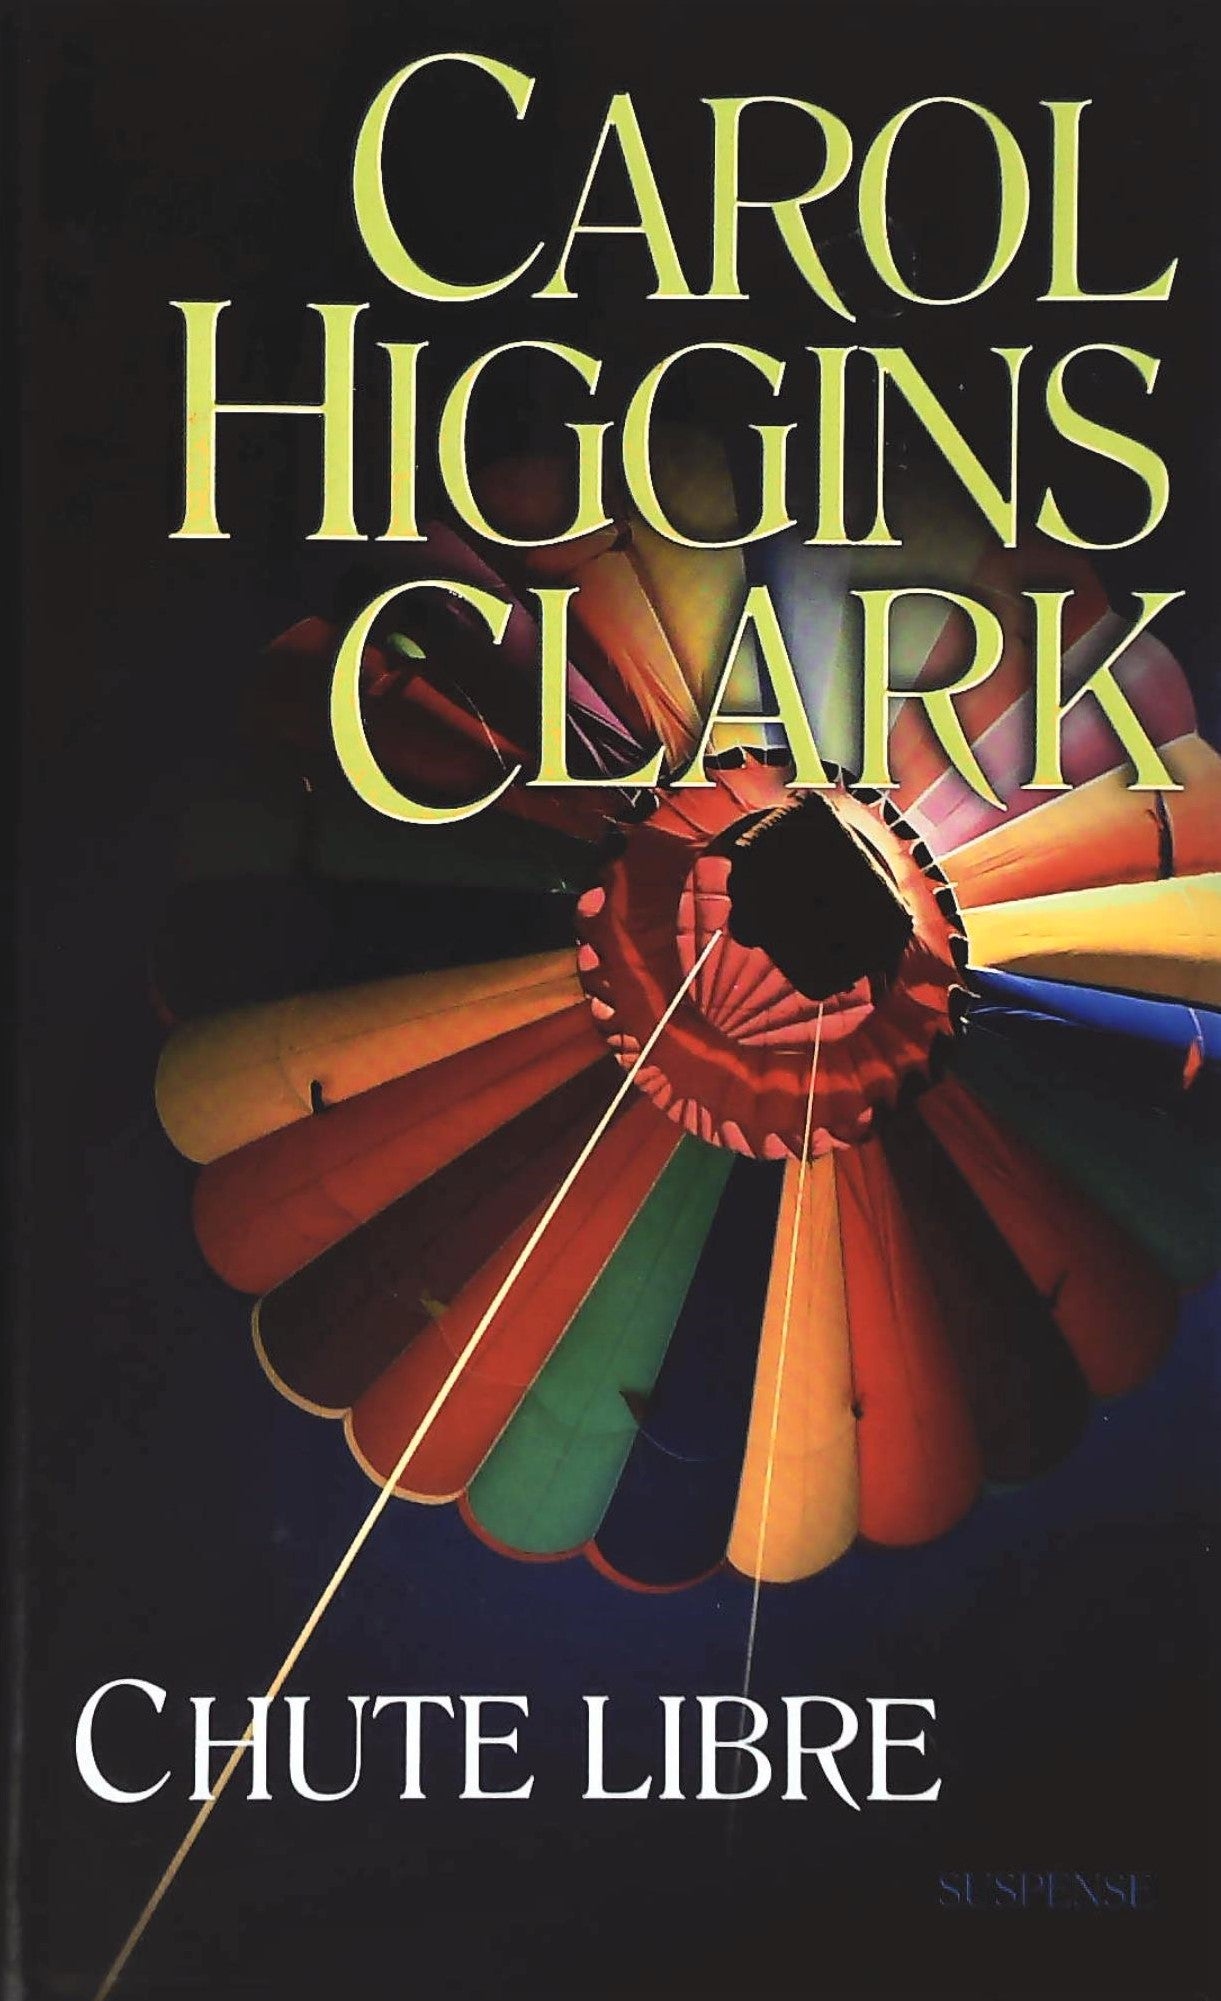 Livre ISBN 2744182206 Chute libre (Carol Higgins Clark)